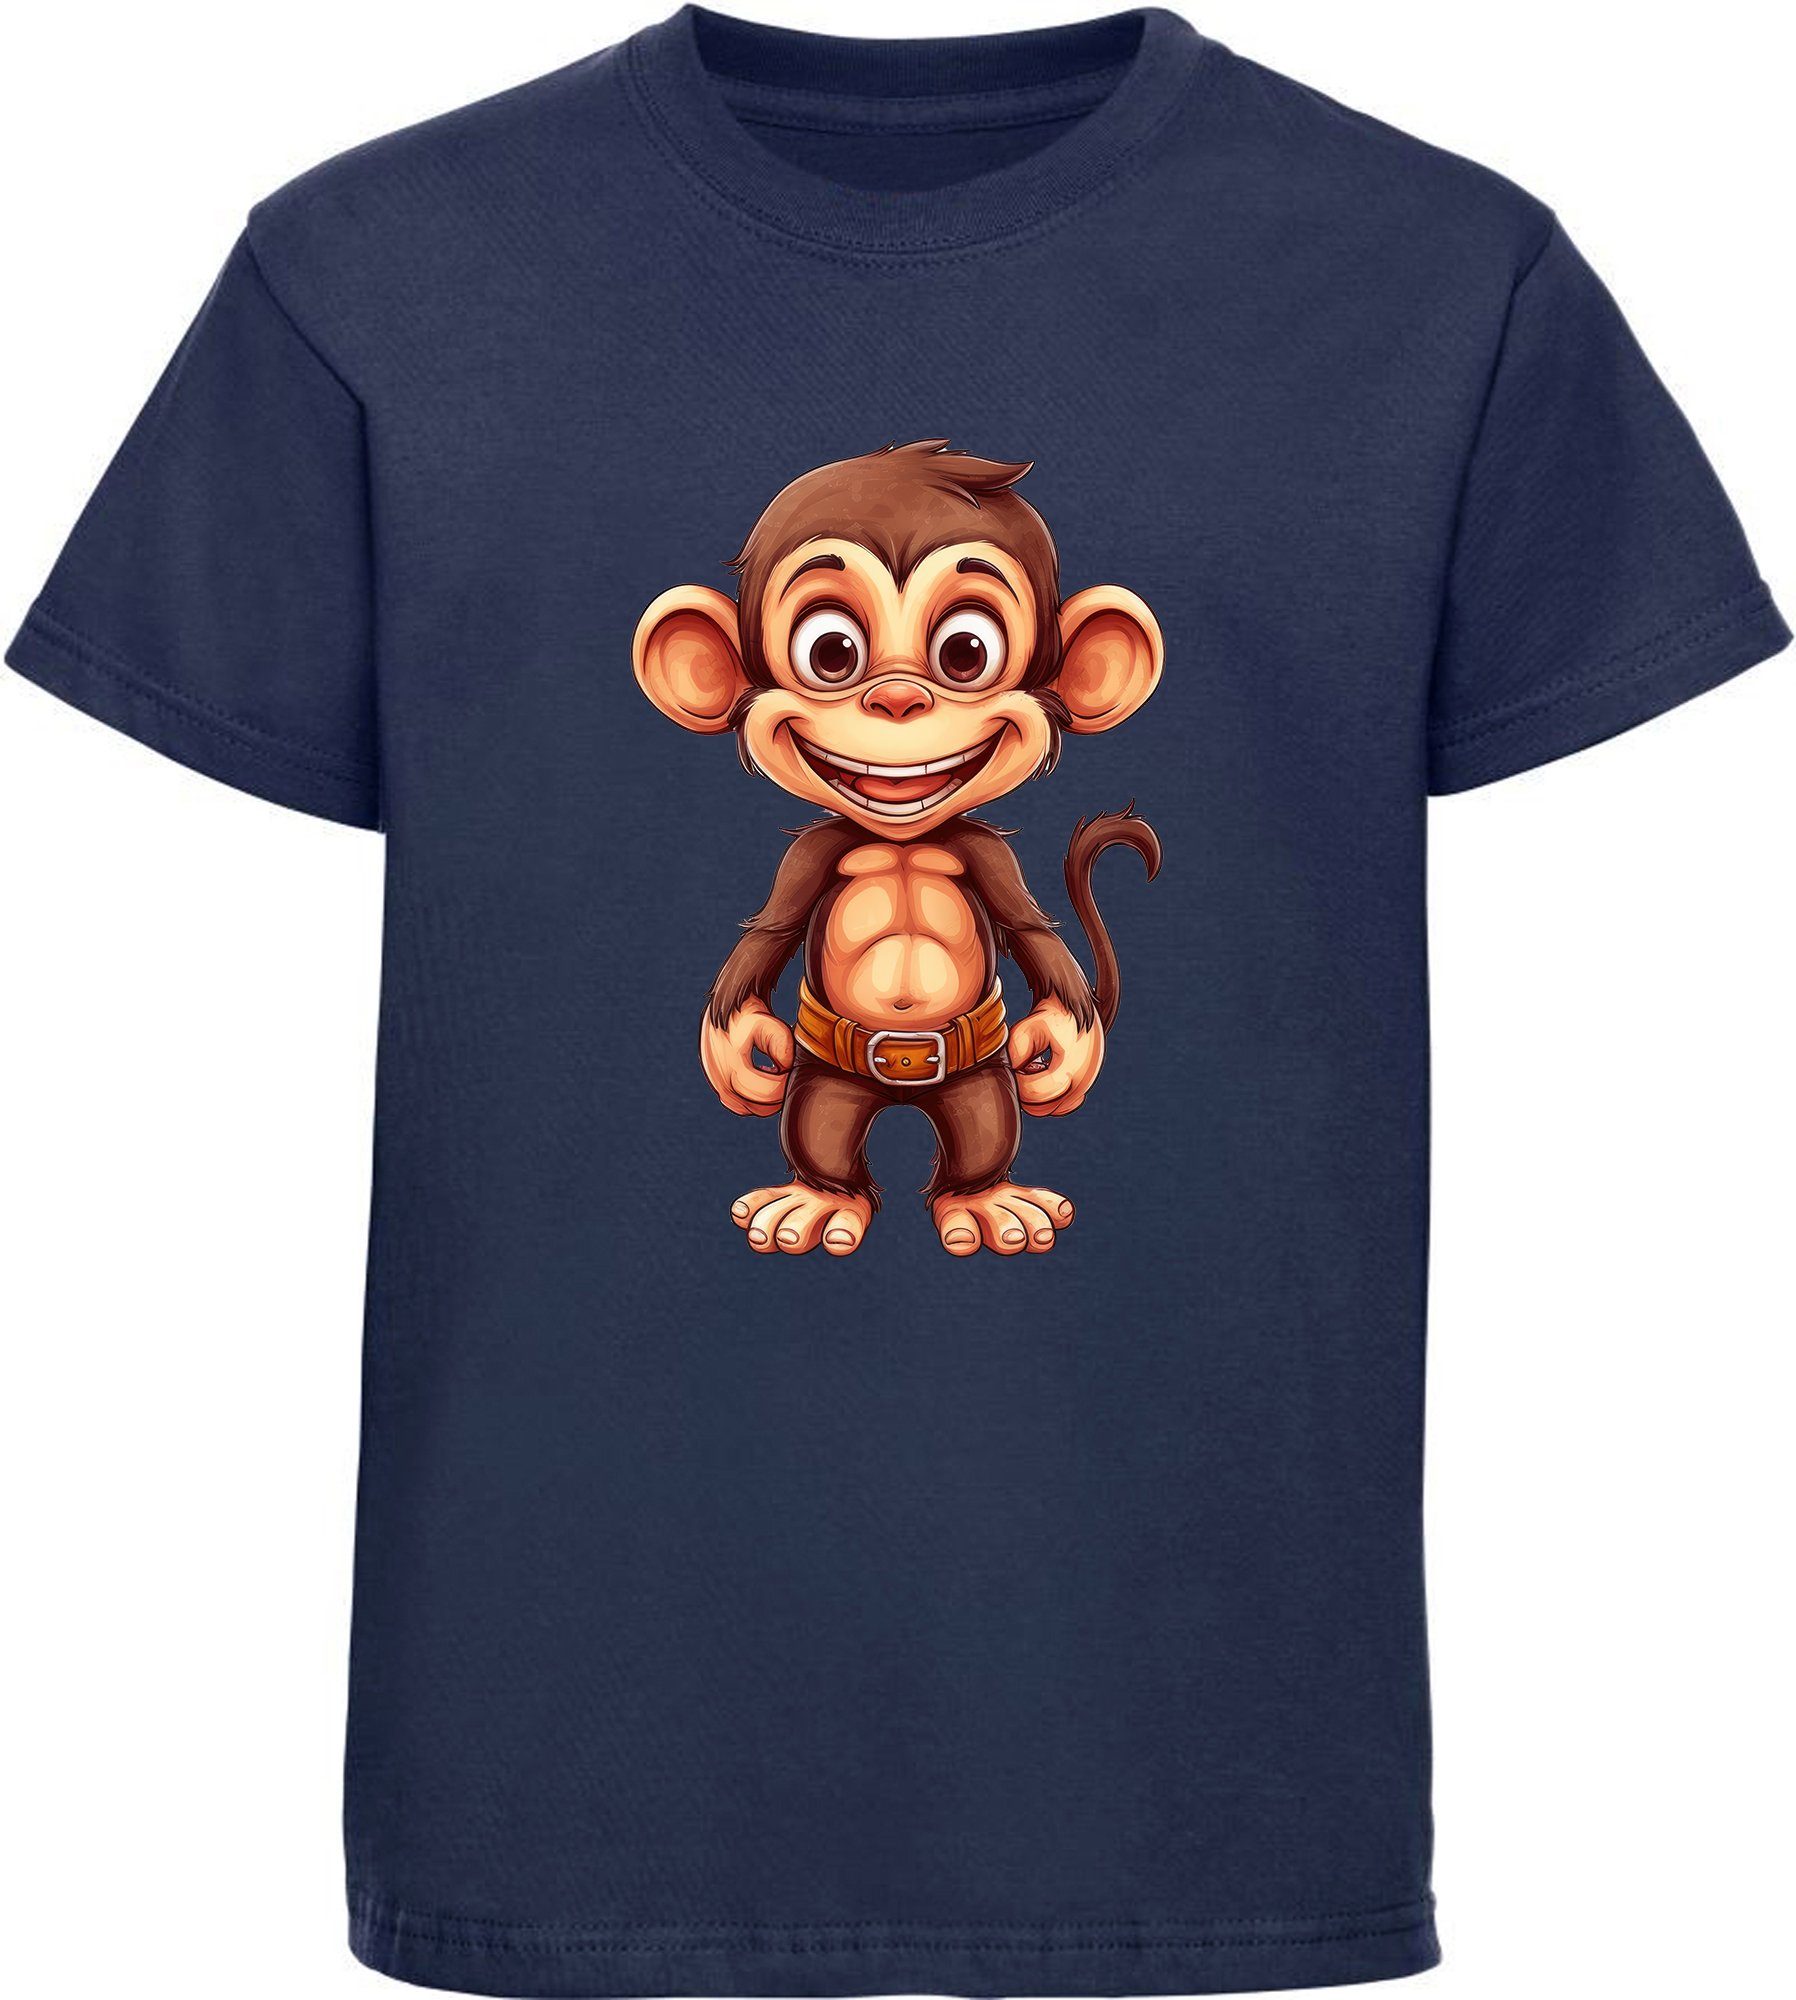 MyDesign24 T-Shirt Kinder bedruckt Baumwollshirt Print Shirt Baby blau Wildtier mit Schimpanse Aufdruck, - i276 Affe navy